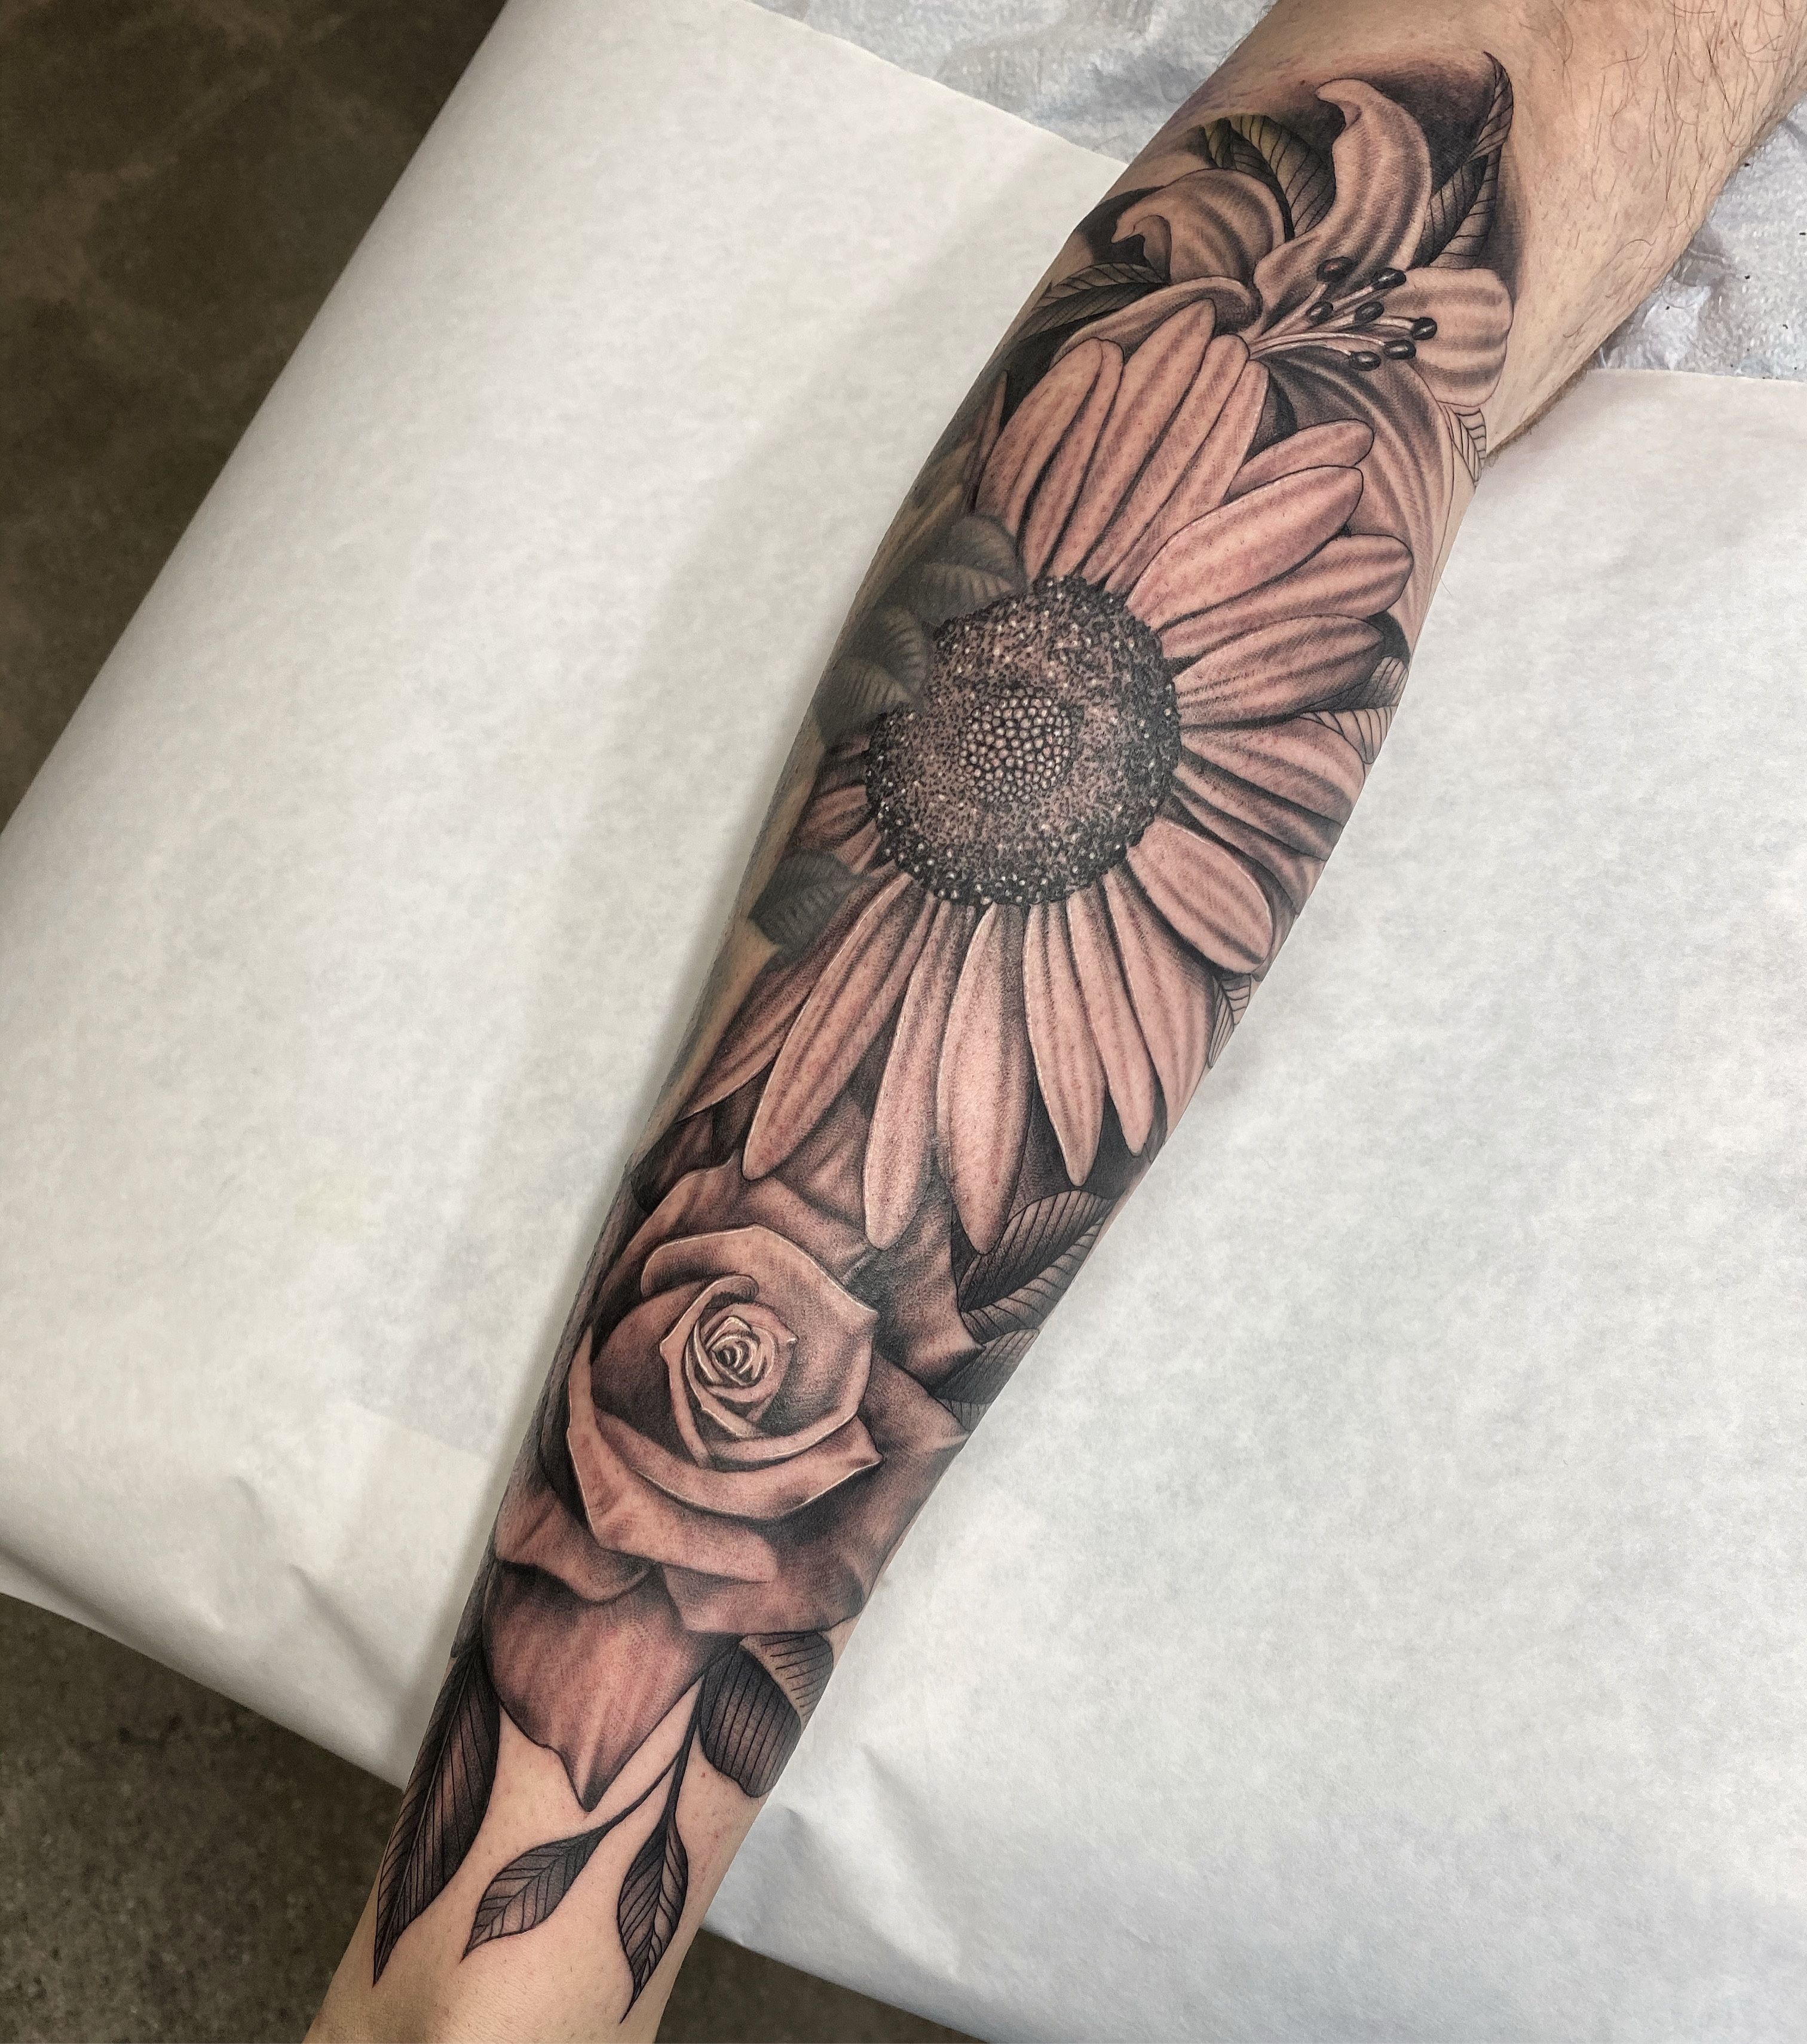 50 Best Flower Tattoos On Leg  Tattoo Designs  TattoosBagcom